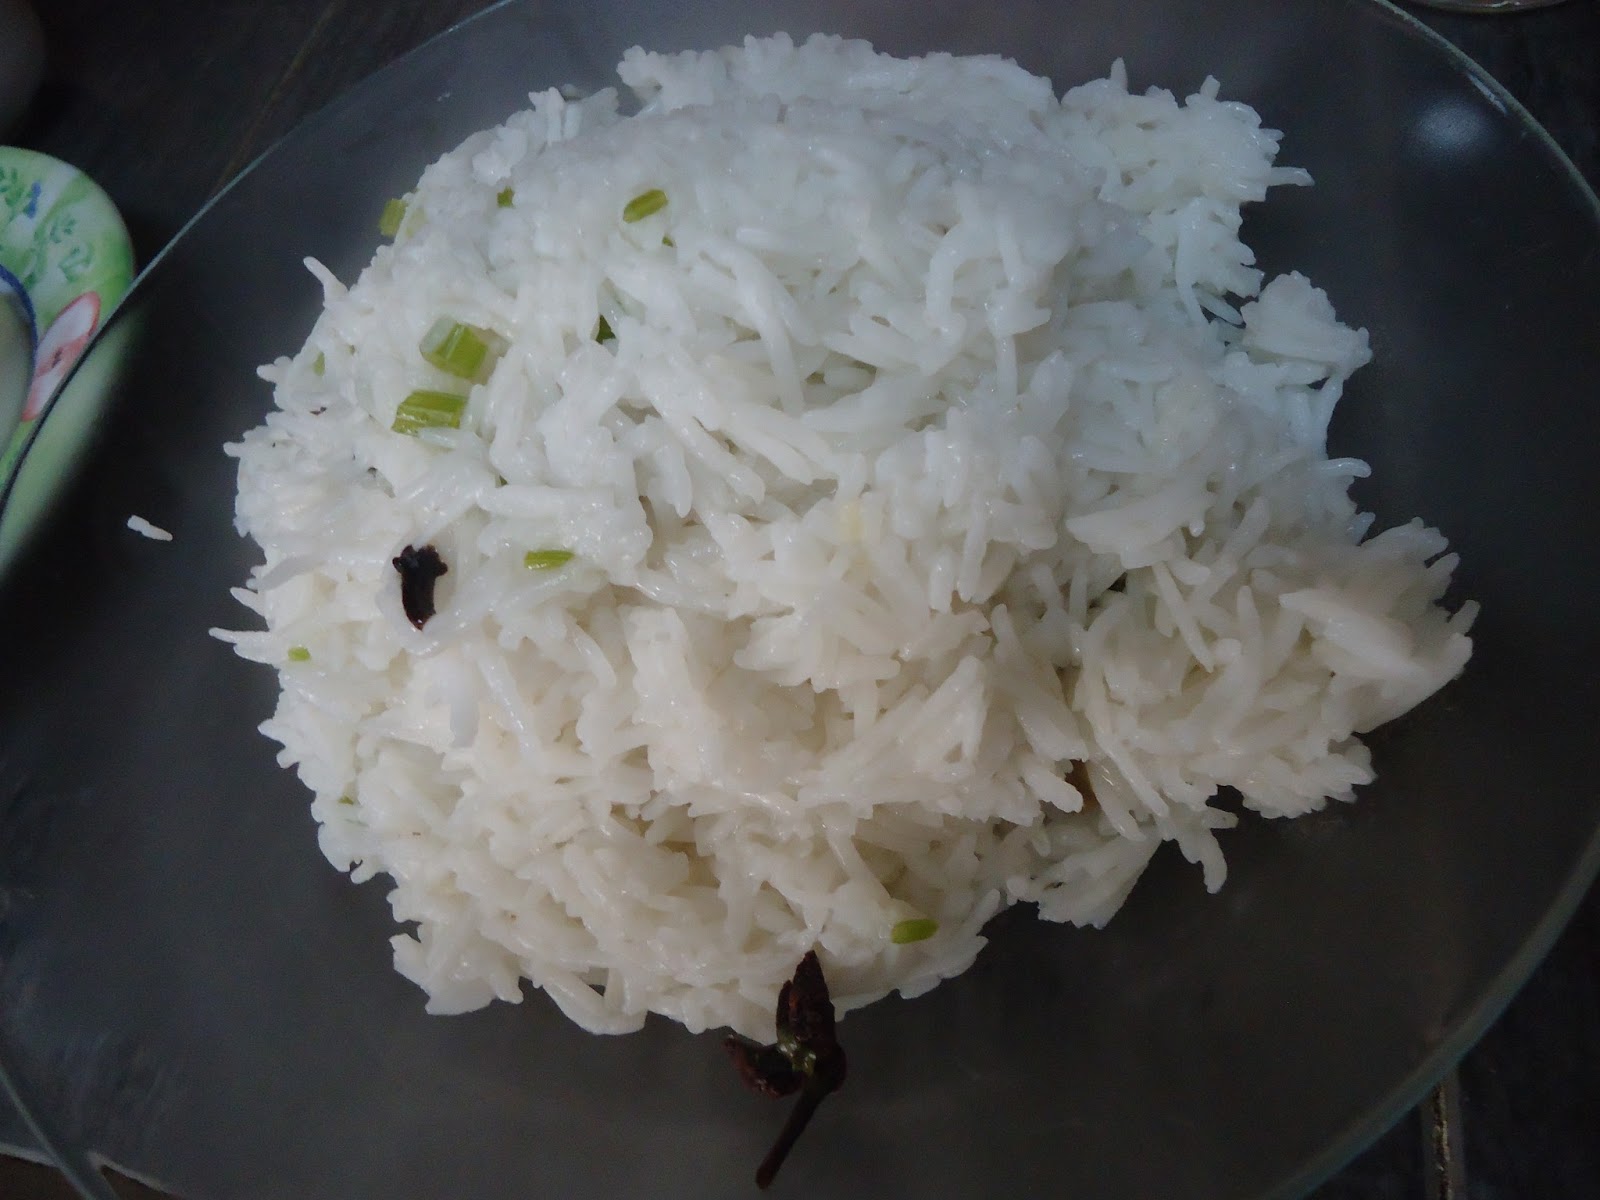 Haslina: Nasi Beriani Pakistan dan Kari Kambing with resepi.